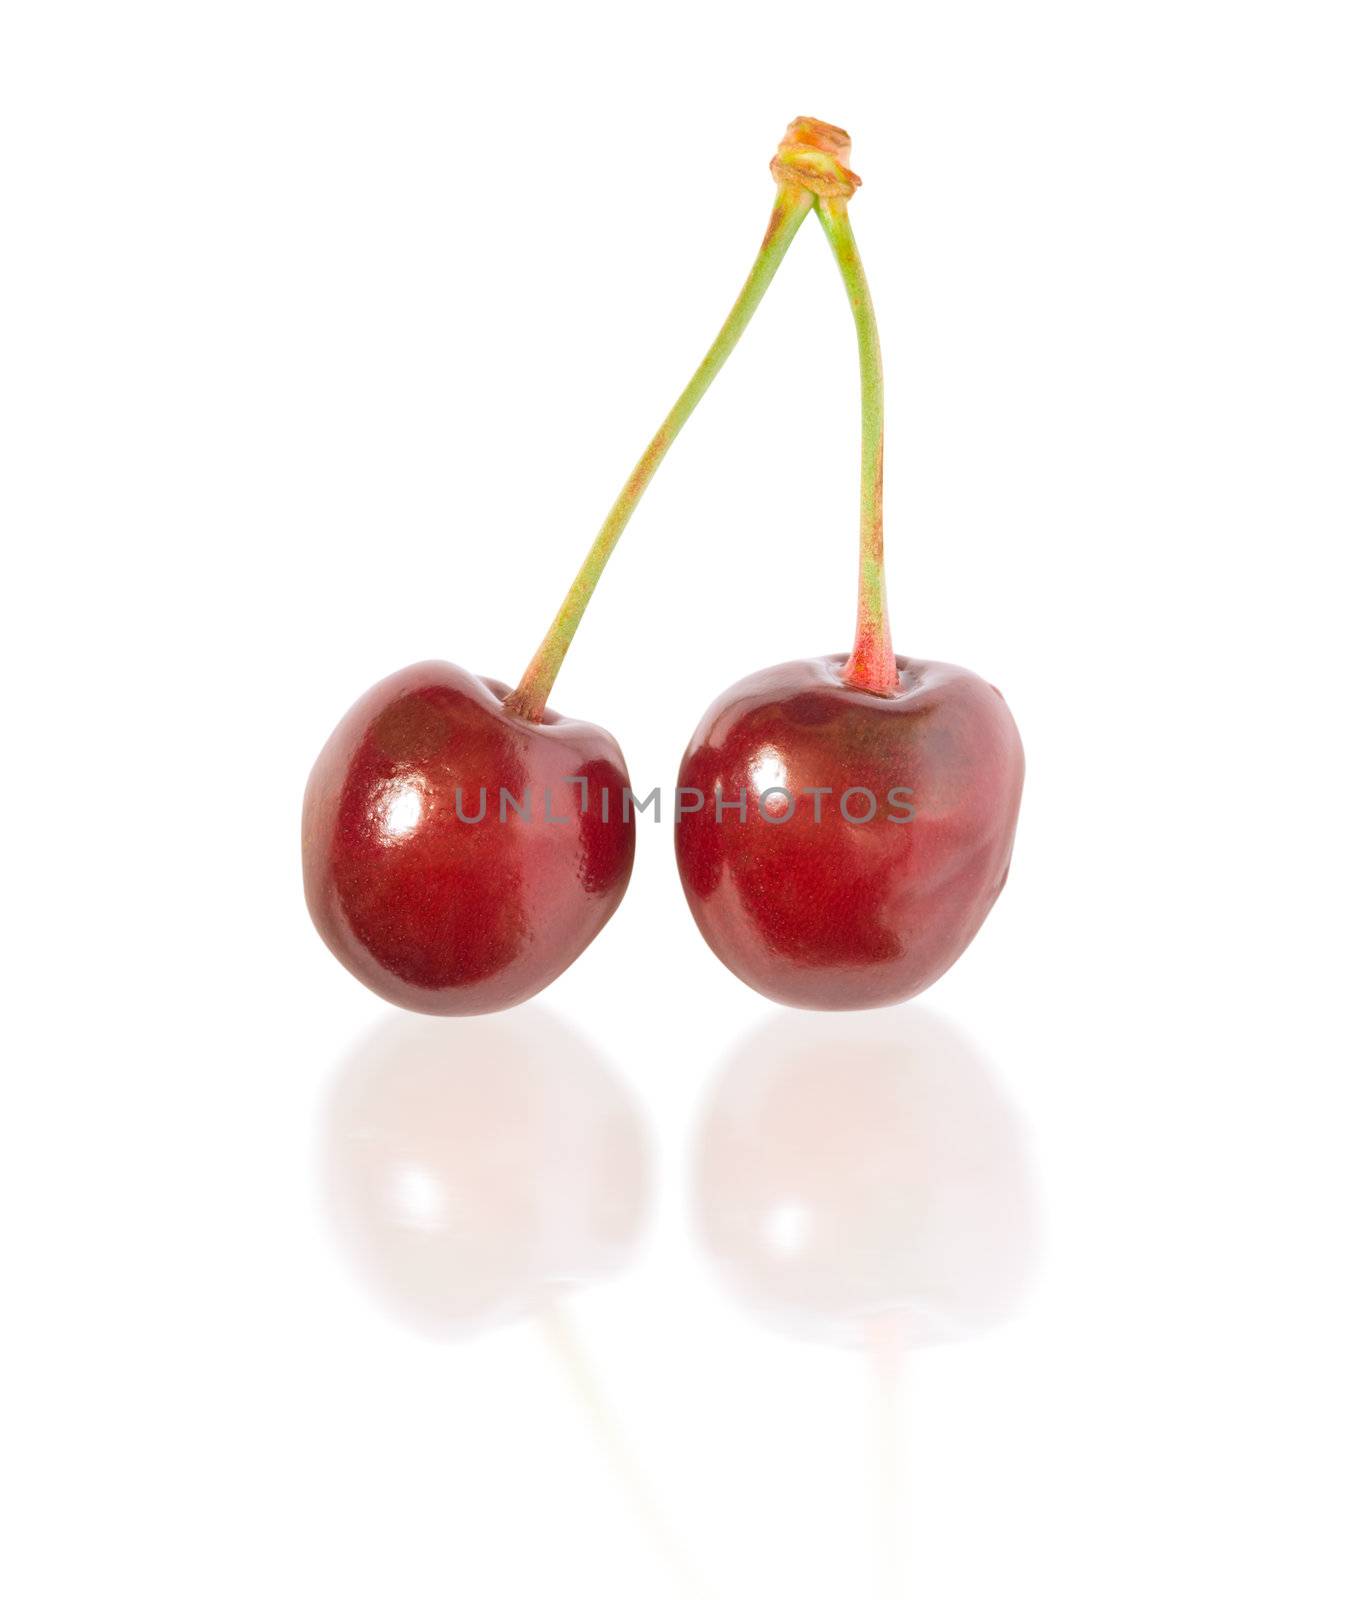 cherry by Kuzma